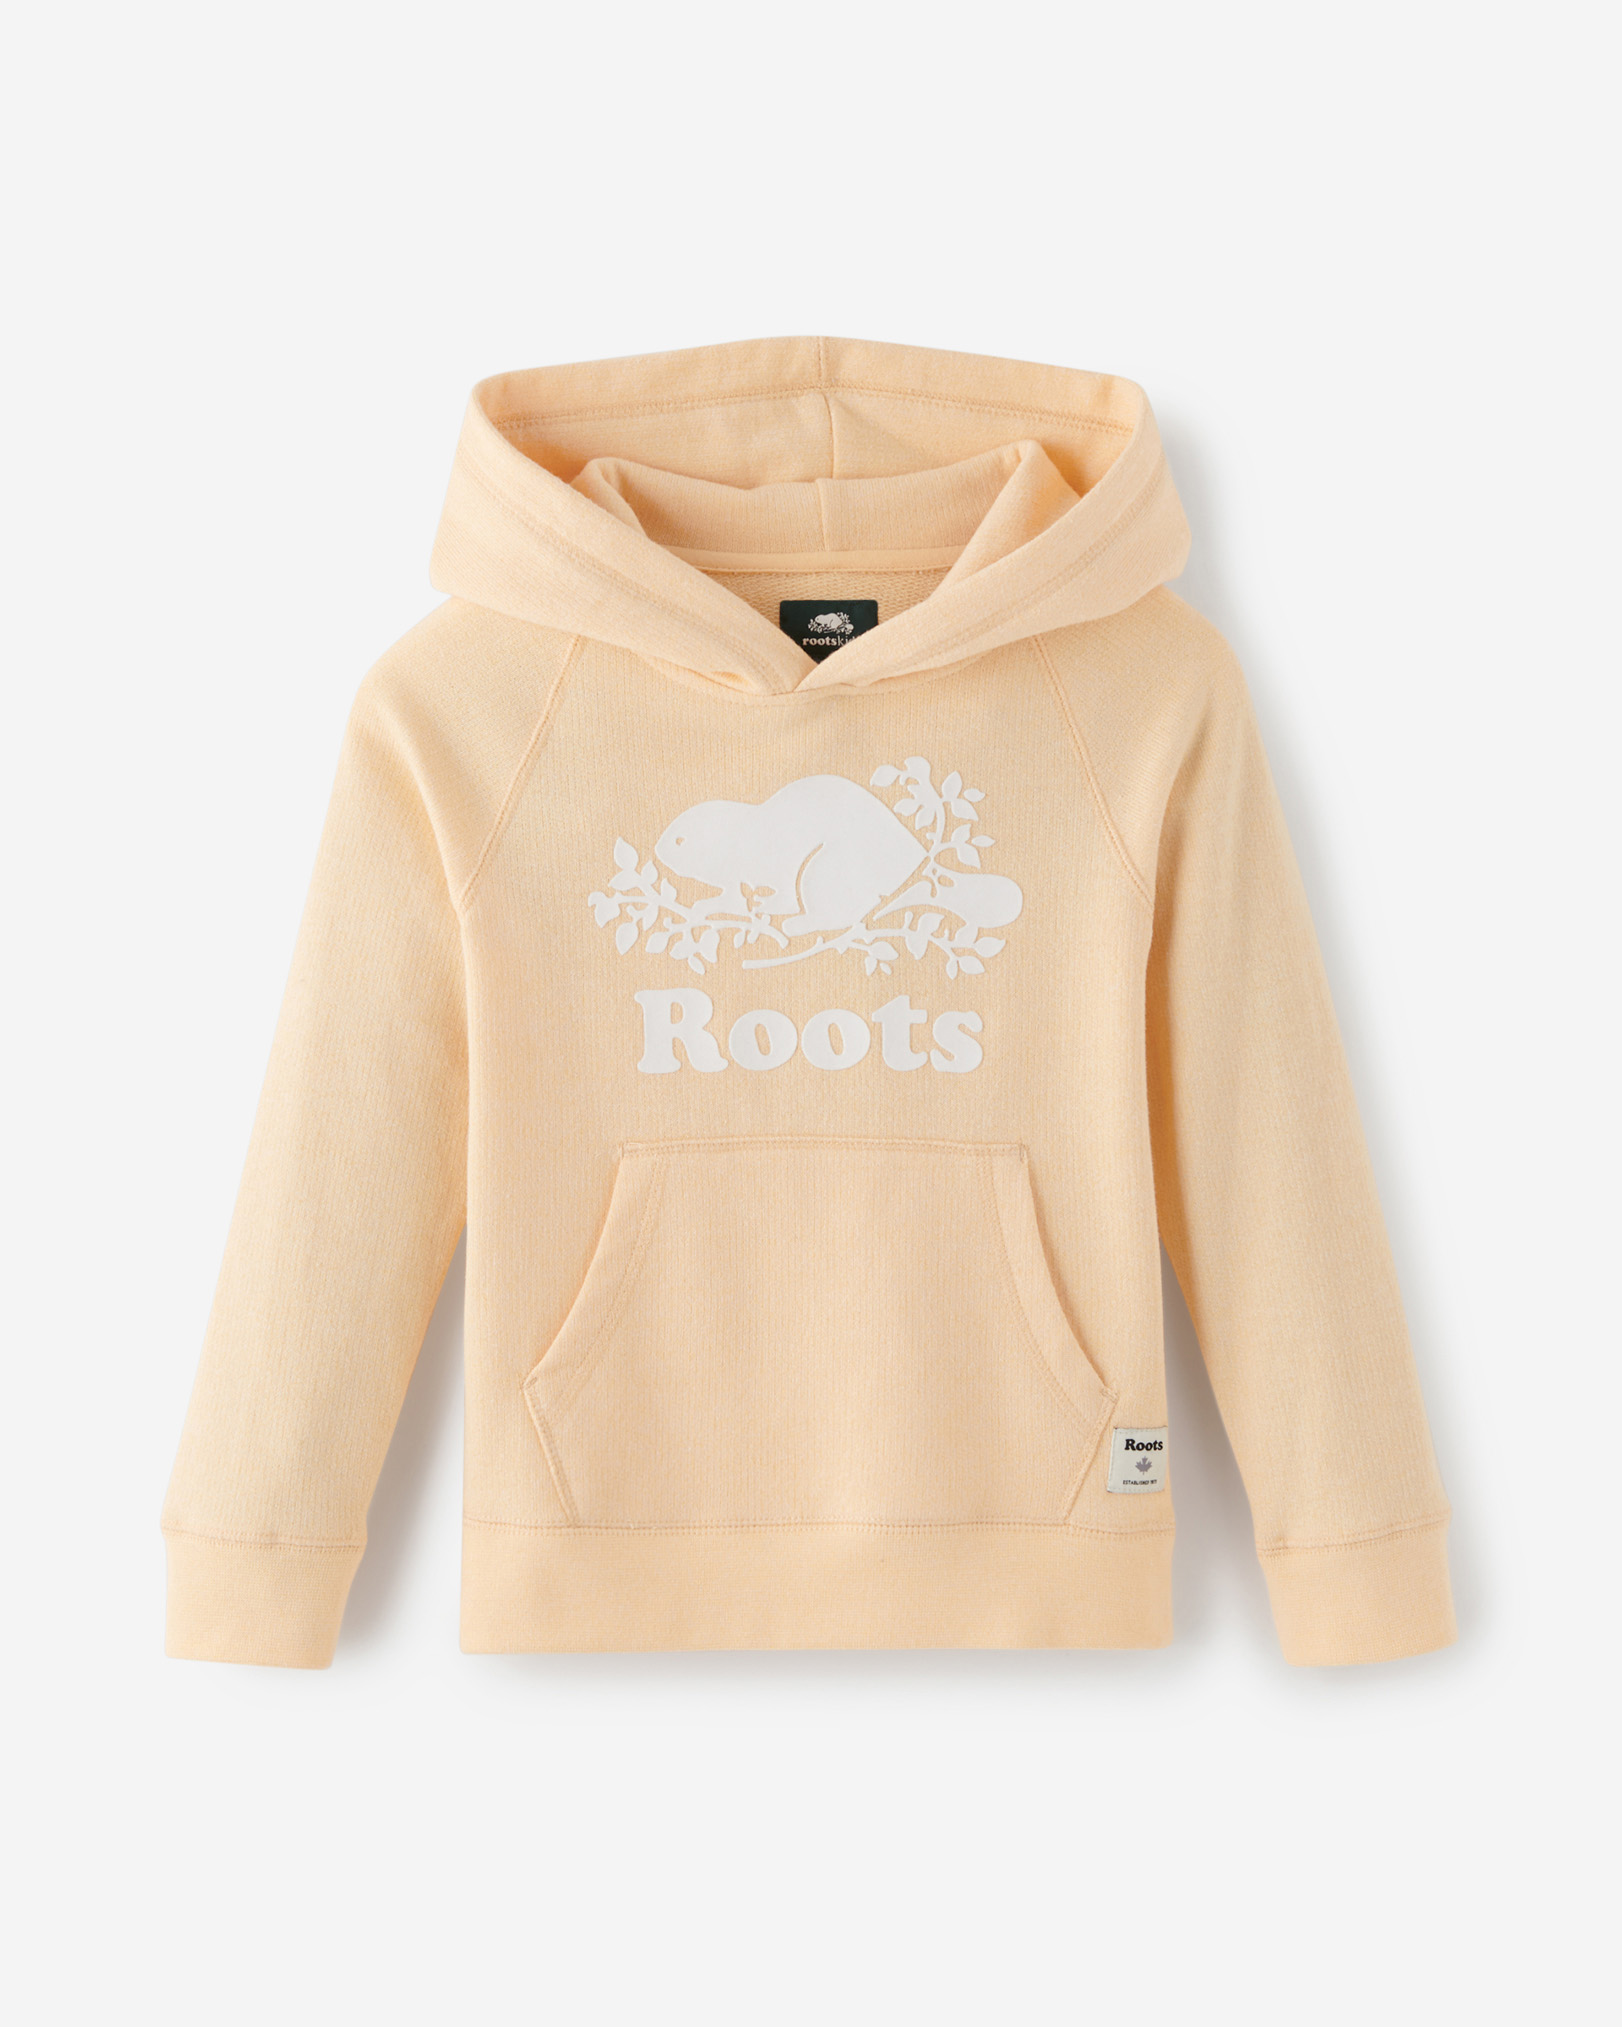 Roots Kids Original Kanga Hoodie Jacket in Apricot Sherbet Ppr